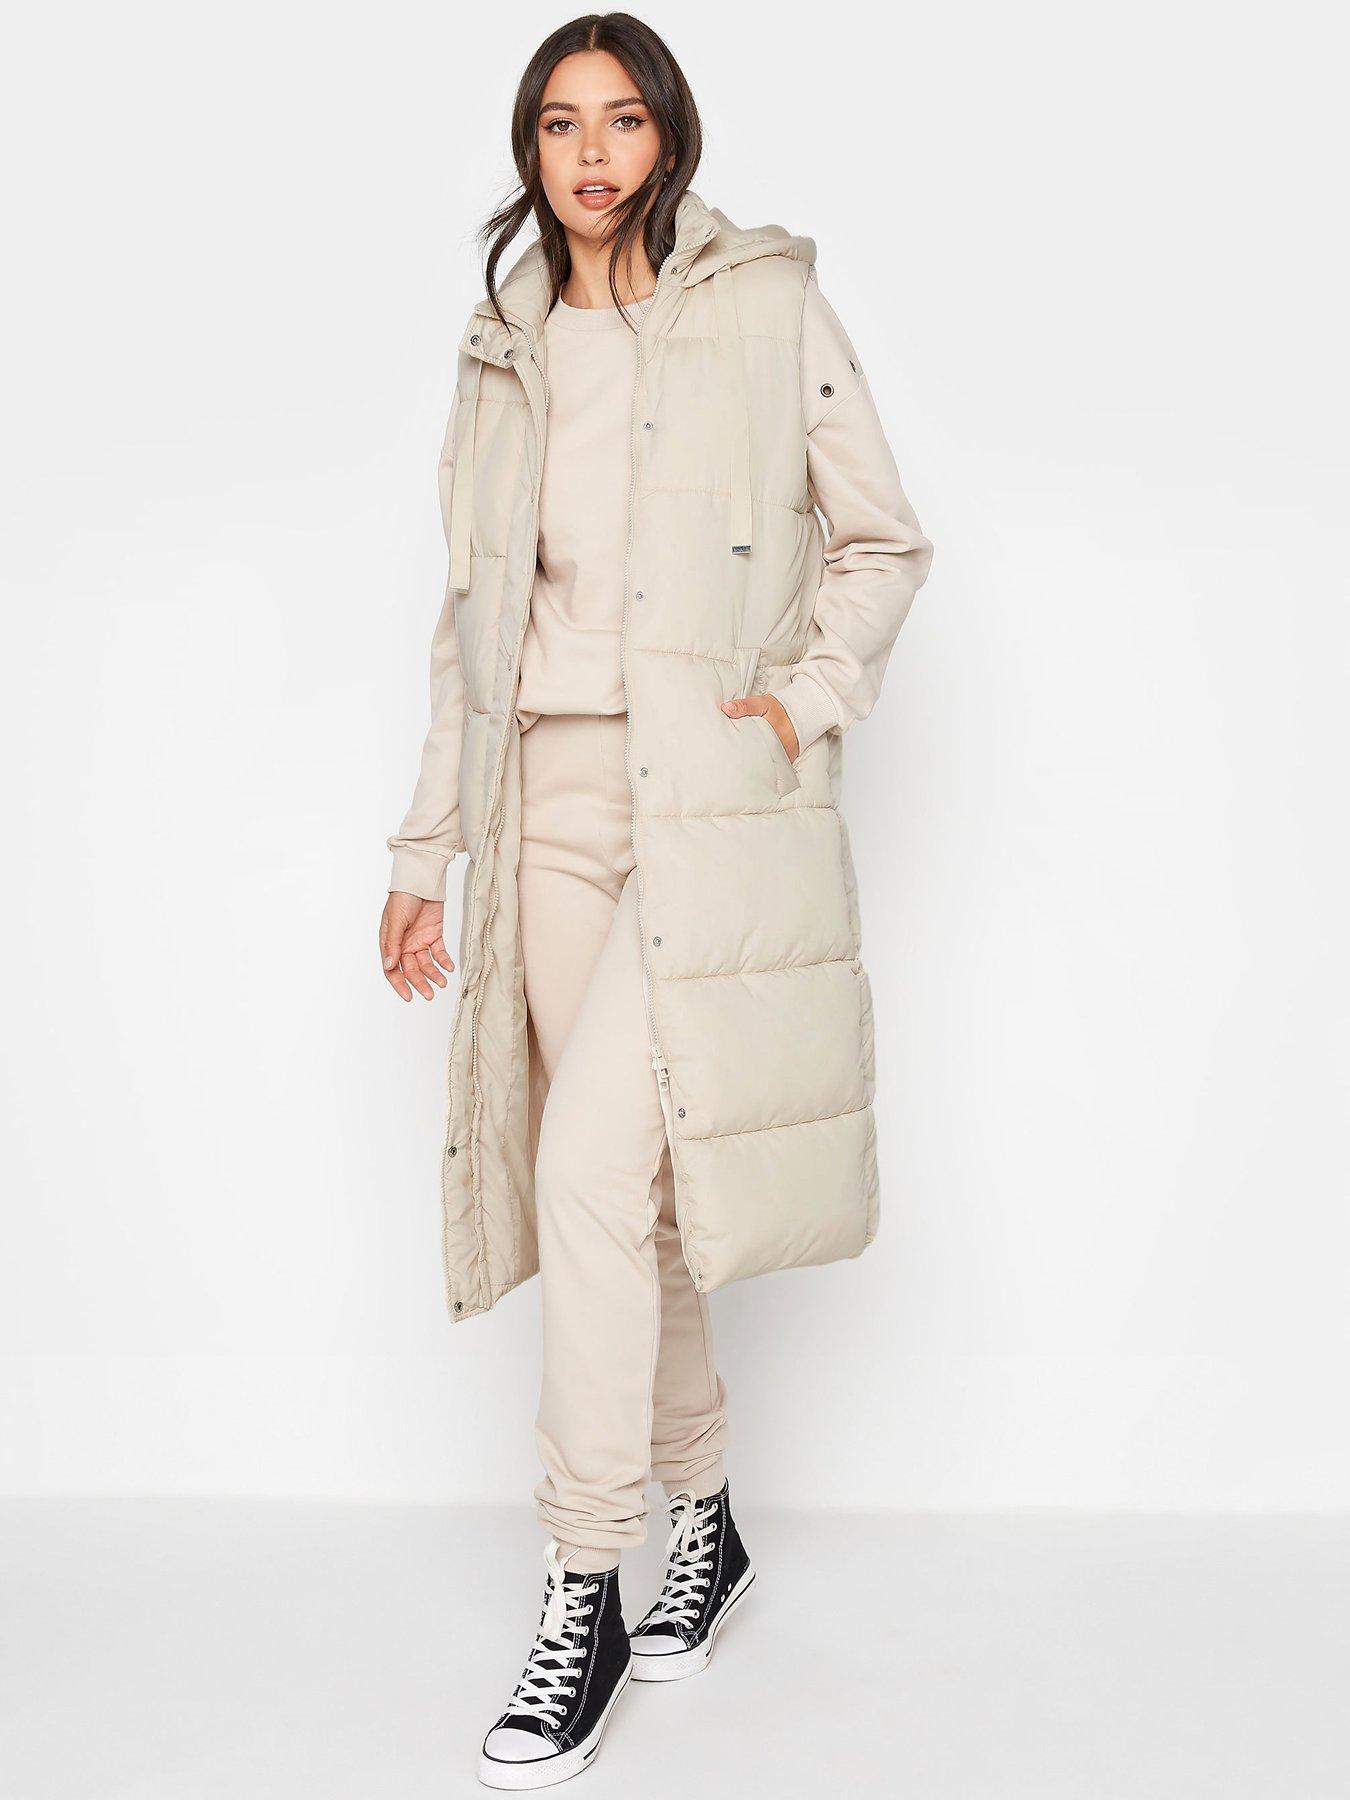 New Women EAST Linen Blend Longline Jacket Coat Size 10 12 14 16 18 20  RRP £349 